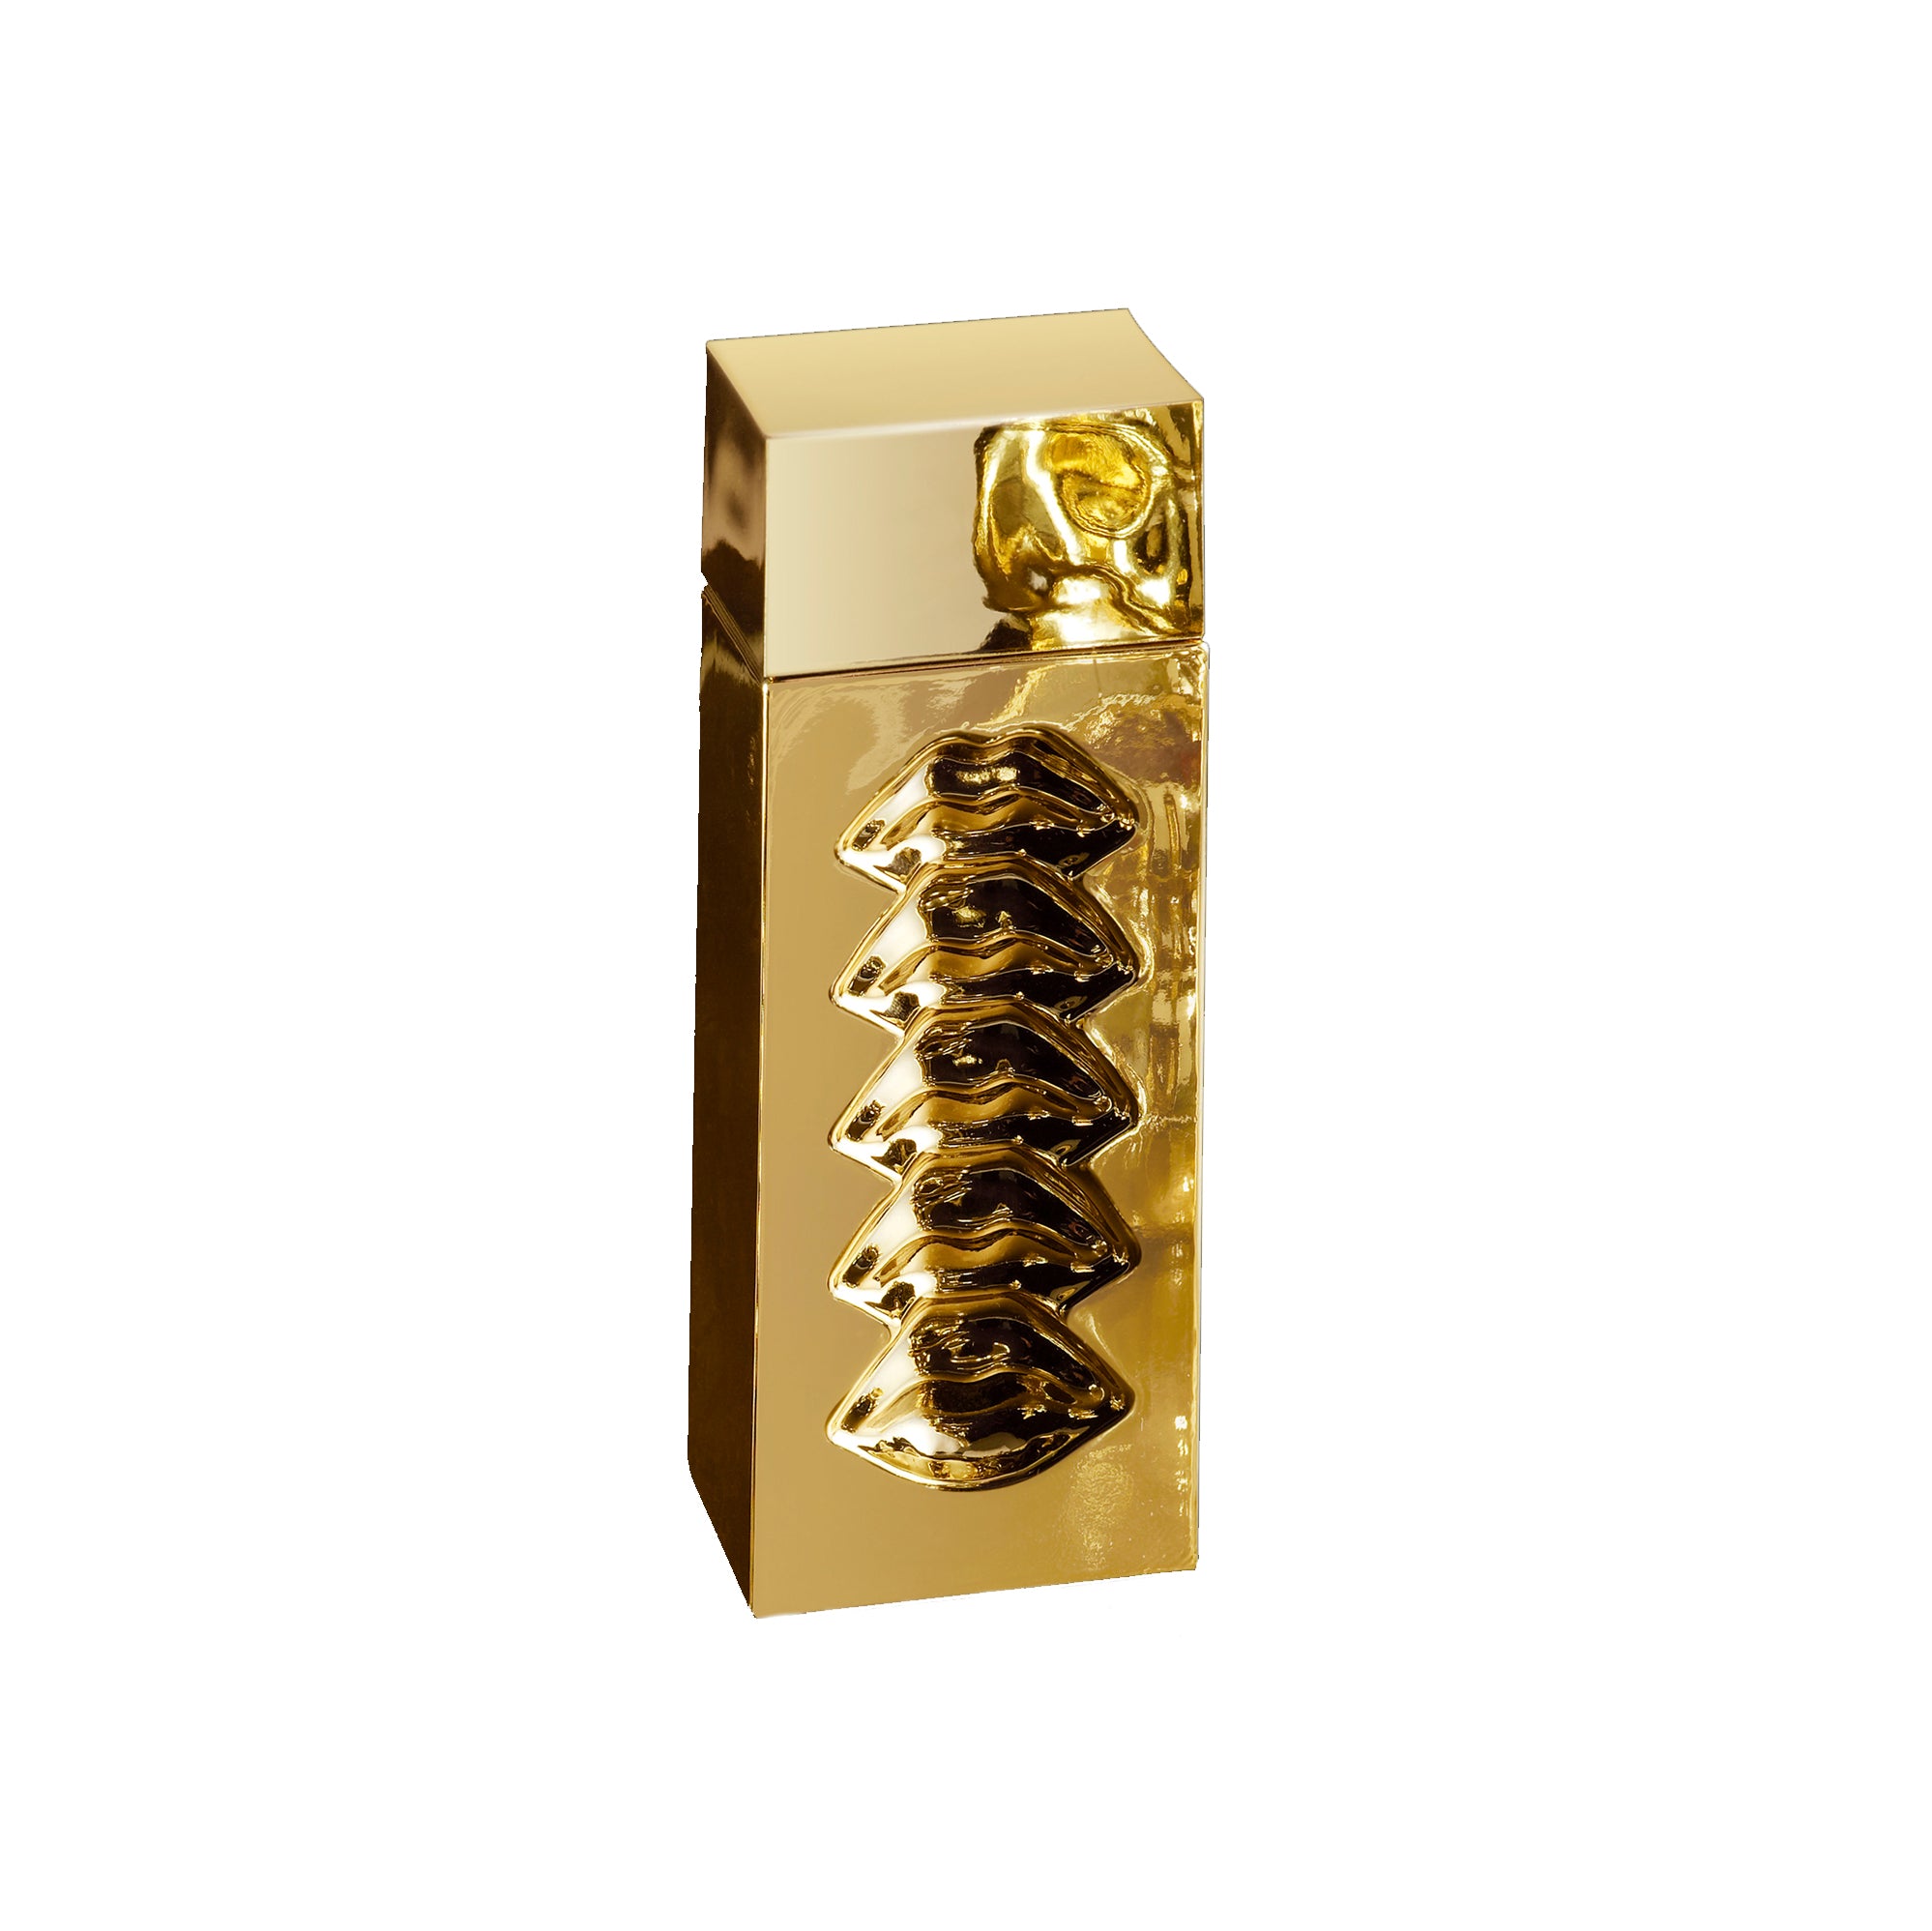 Srinagar Eau de Parfum 100ml Bottle by Dalí Haute Parfumerie